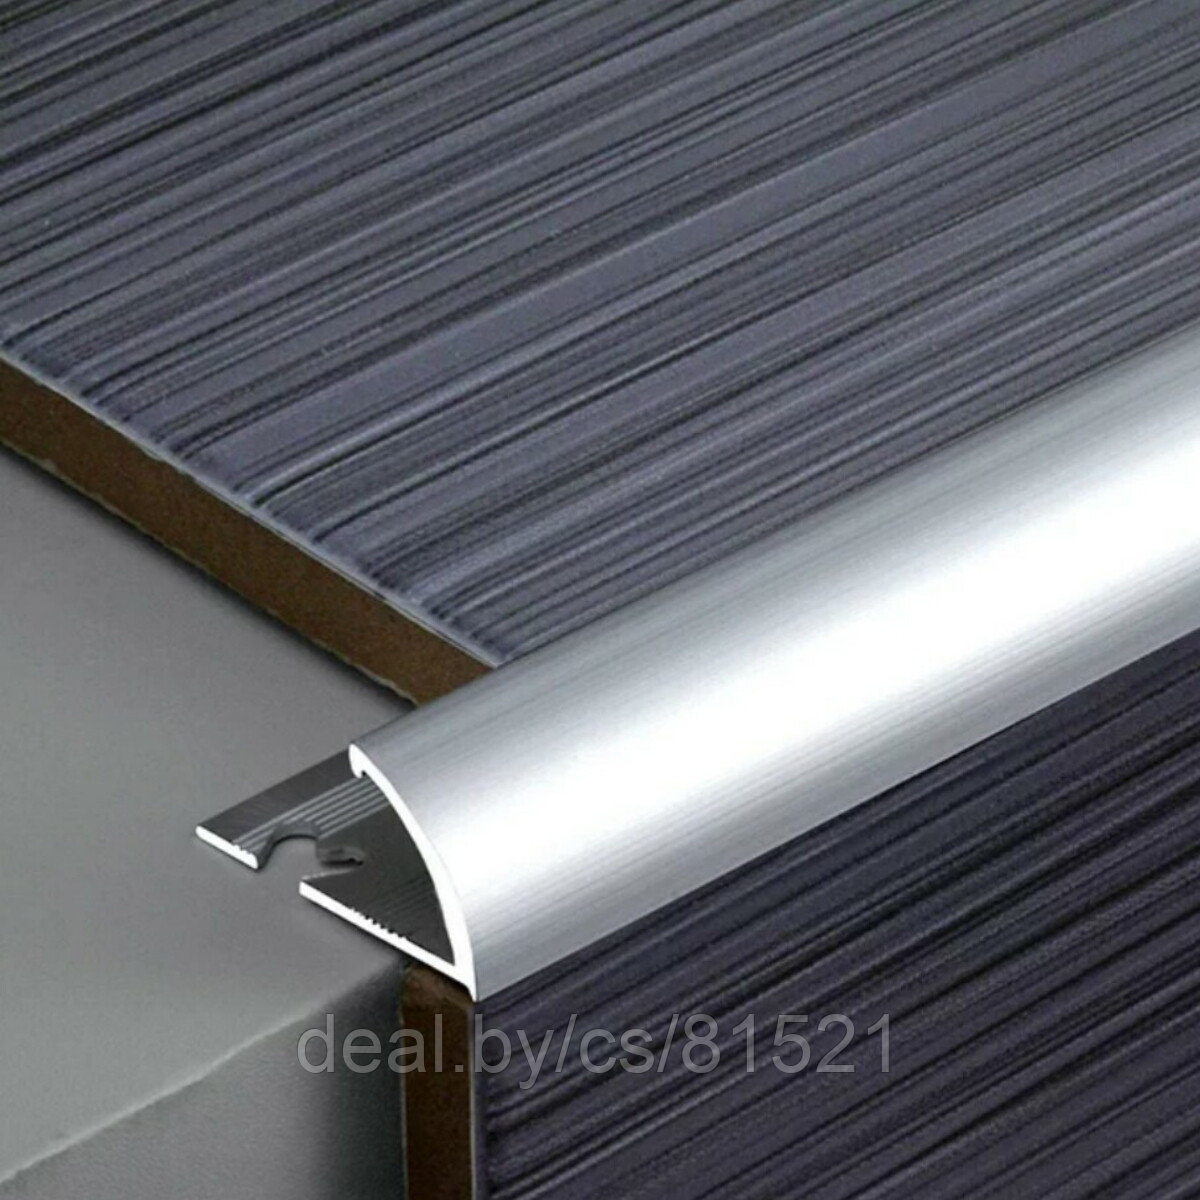 Уголок для плитки из алюминия полукруглый наружный анод. серебро 10мм, длина 270см